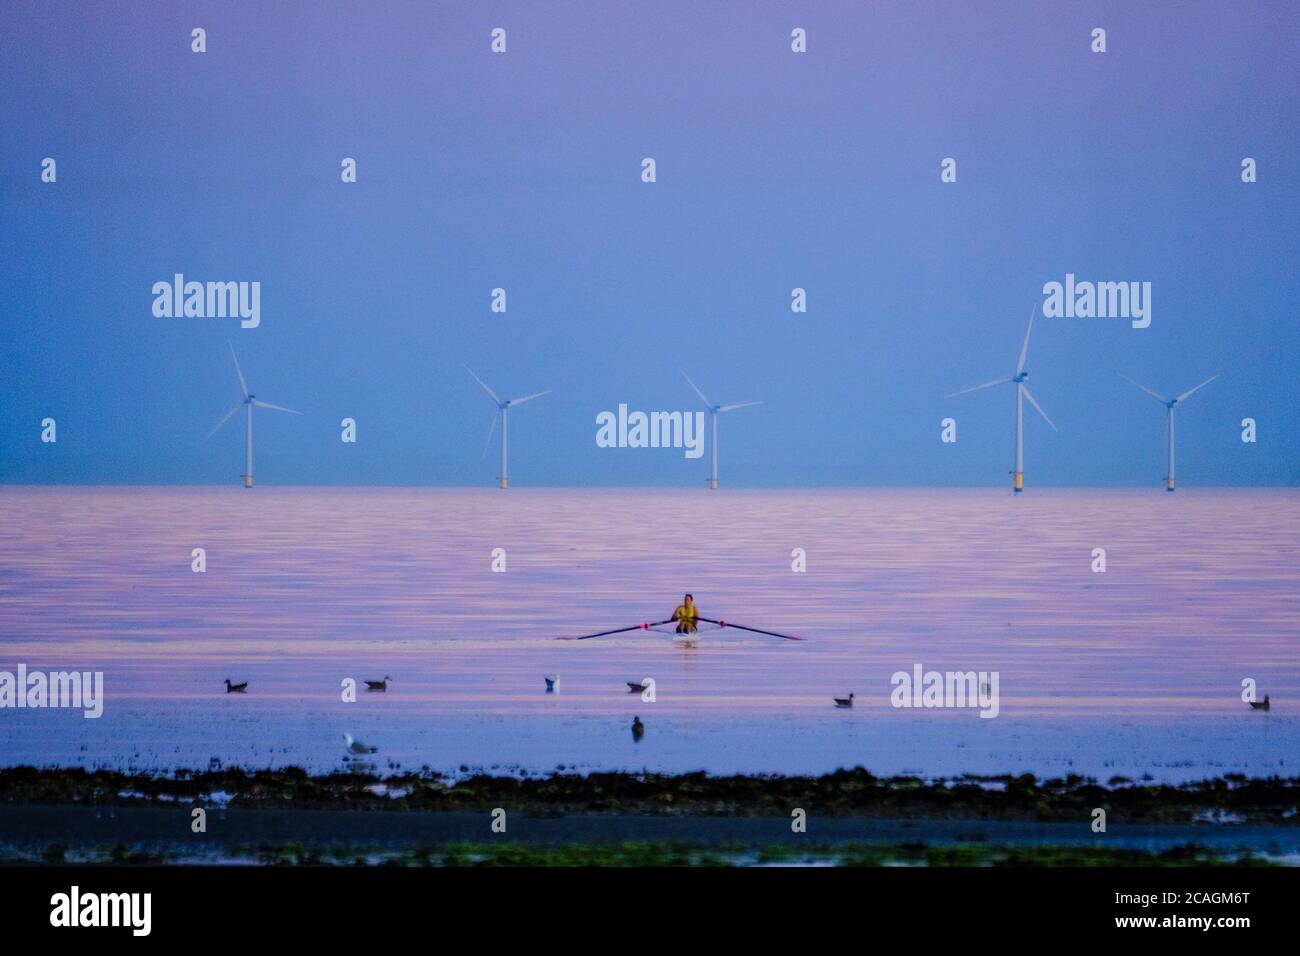 Worthing Beach, Worthing, Reino Unido. 6 de agosto de 2020. Un rozador atraviesa el mar tranquilo mientras el sol se pone emitiendo un cálido resplandor en una cálida noche de verano. El Parque Eólico de Rampion se puede ver en el fondo, 13km-16km de la costa. Imagen de crédito: Julie Edwards/Alamy Live News Foto de stock